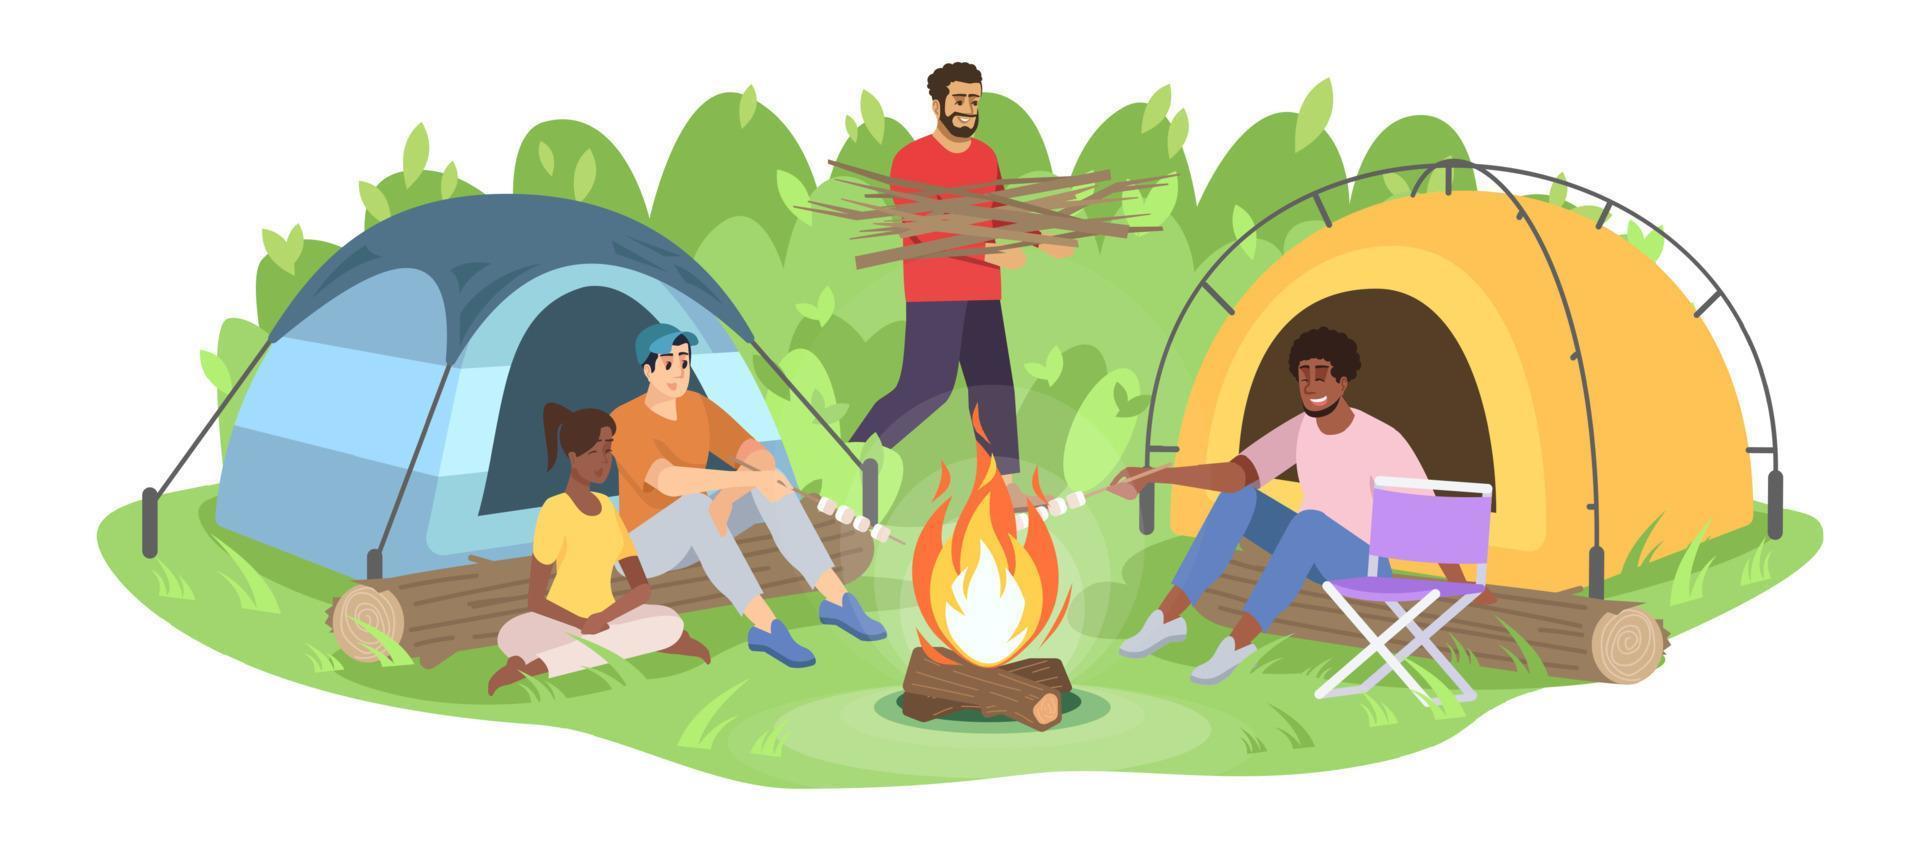 ilustración de vector plano de viaje de camping de aventura. felices jóvenes campistas agrupan personajes de dibujos animados. los amigos se sientan alrededor de la fogata, el hombre lleva leña. Recreación forestal aislado sobre fondo blanco.